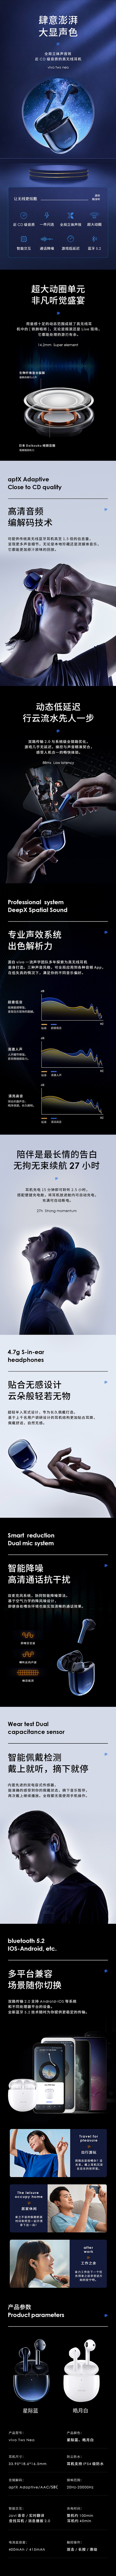 自苹果率先发布了世界上第一款TWS蓝牙耳...